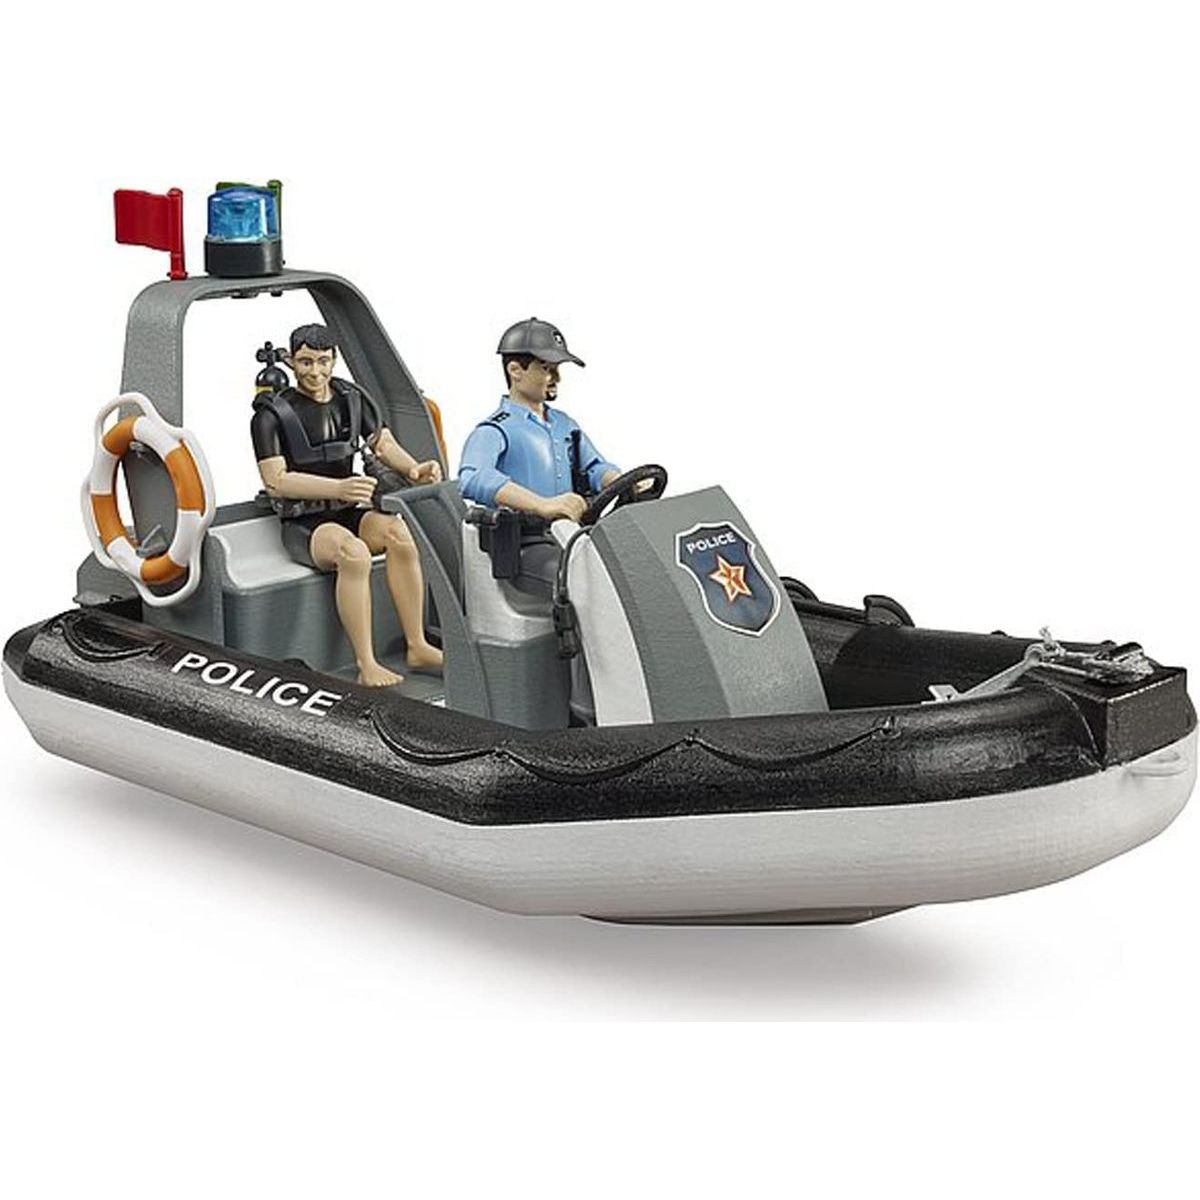 Bruder 62733 Bworld Policejní člun, otočný maják, 2 figurky a příslušenství